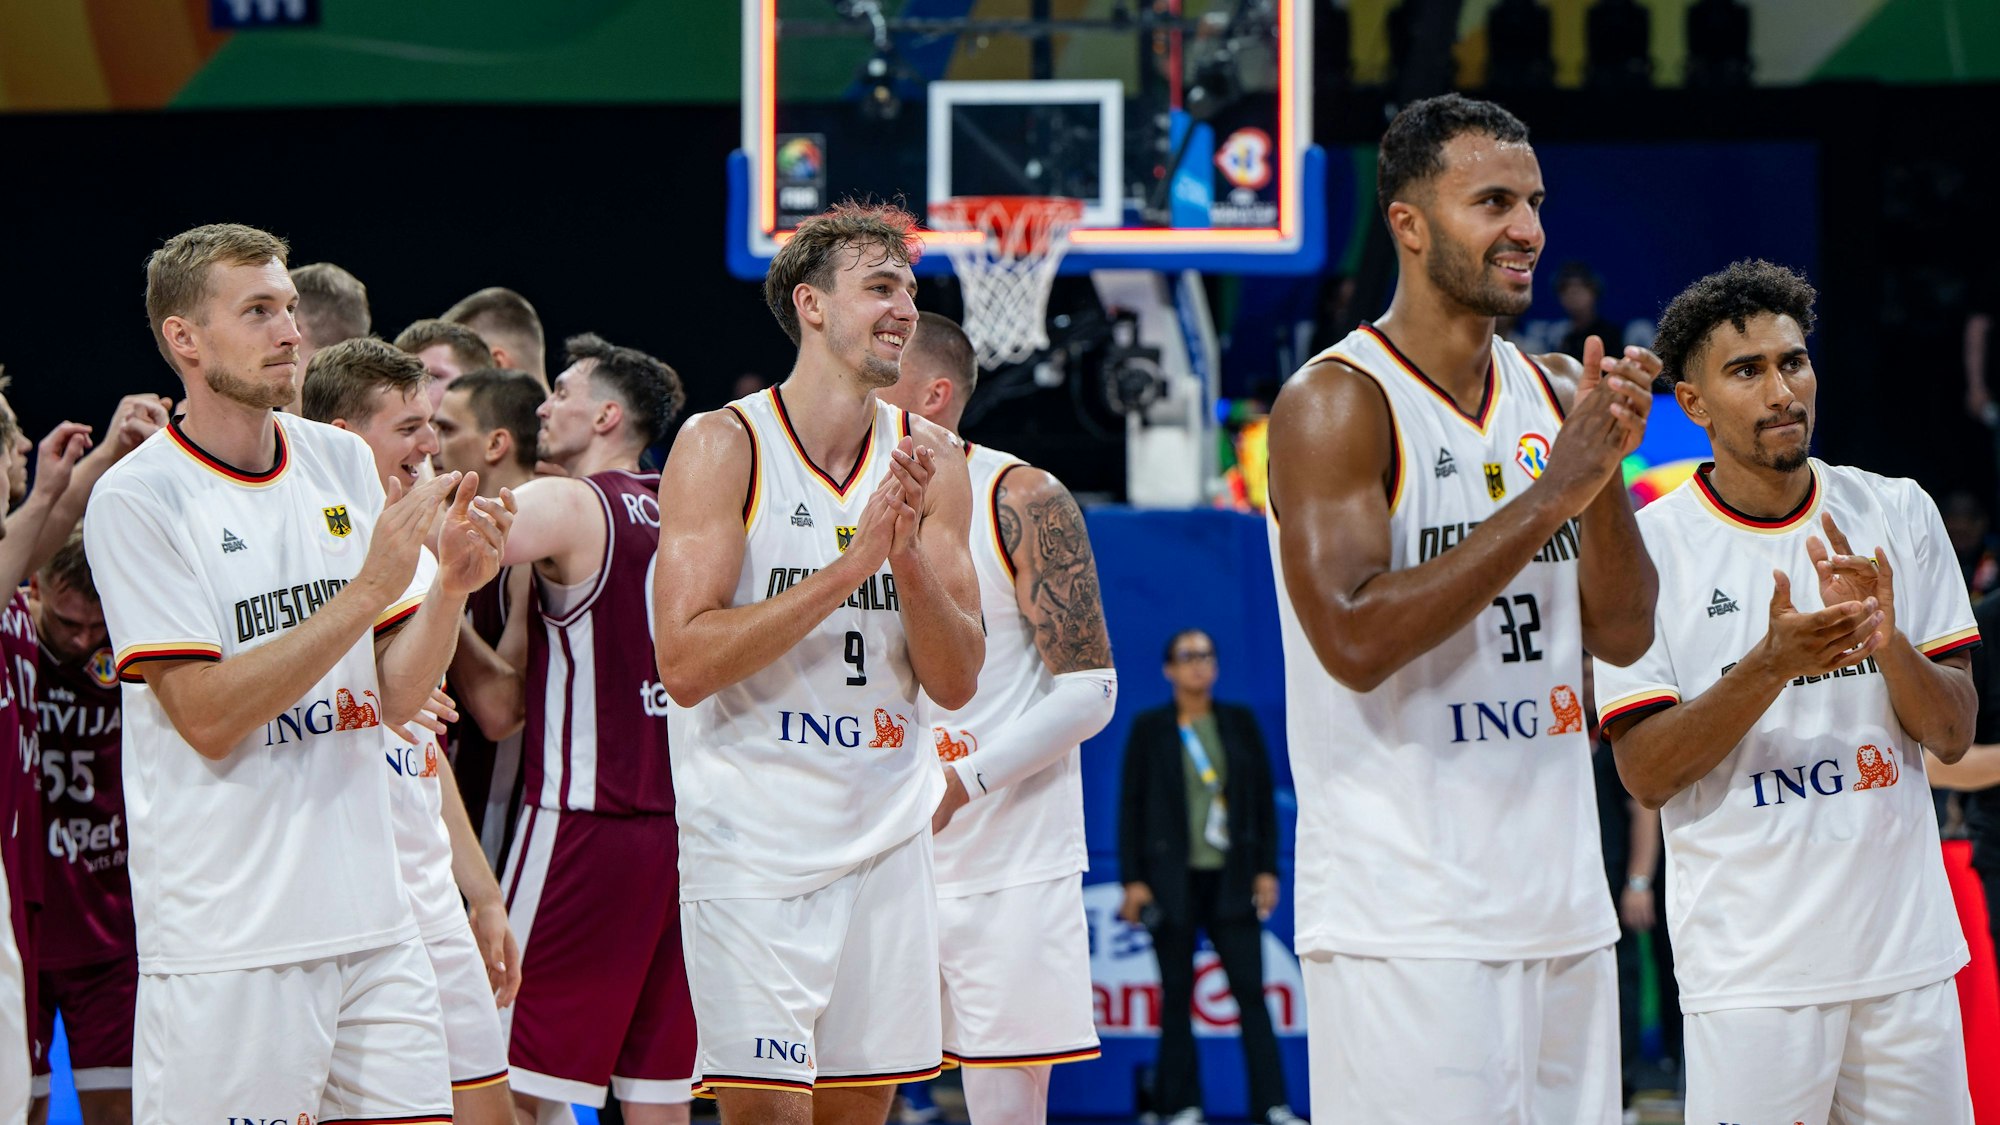 Spieler der deutschen Basketball-Nationalmannschaft jubeln in weißen Trikots nach dem Halbfinaleinzug.